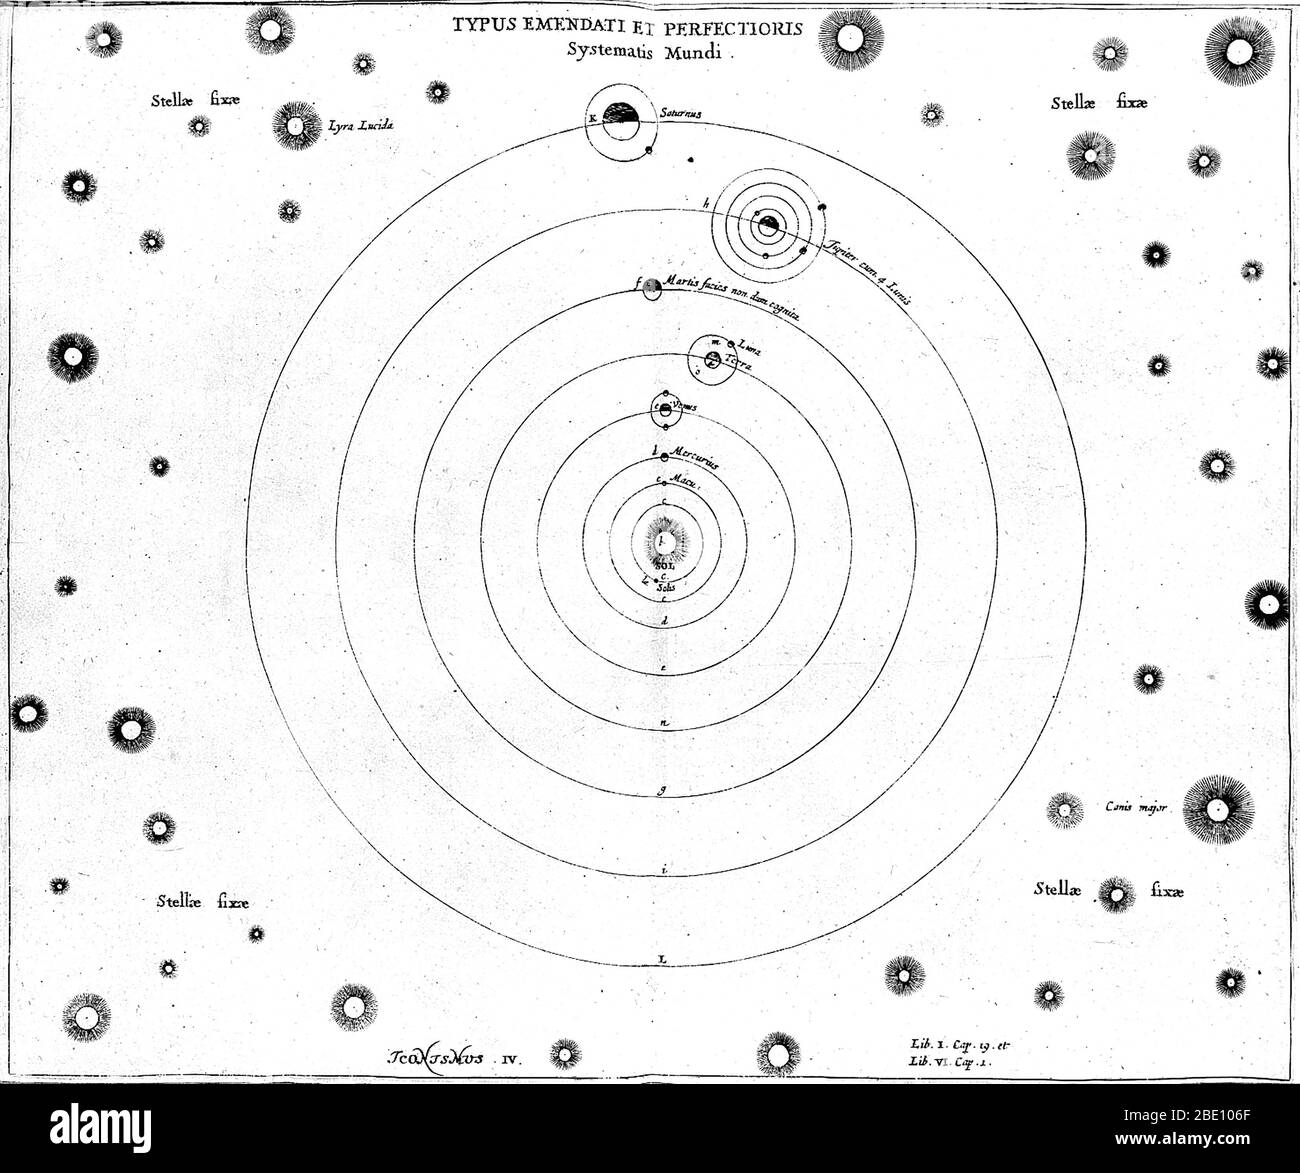 O. von Guericke, Sonnensystem, 17. Jahrhundert. Diagramm des Sonnensystems, veröffentlicht in Experimenta Nova (1672) vom deutschen Wissenschaftler und Erfinder Otto von Guericke (1602-1686). Die Sonne ist in der Mitte, umgeben von zwei Sonnenflecken, Merkur, Venus, Erde, Mars, Jupiter und Saturn. Ein Mond wird gezeigt, umkreist Venus (eine Theorie später diskreditiert), mit dem Mond umkreist die Erde, vier Monde um Jupiter, und einer um Saturn. Die anderen Planeten waren noch nicht entdeckt worden. Um das Sonnensystem herum befinden sich die "Fixsterne", darunter Lyra Lucida (oben links) und Canis Major (unten rechts). Stockfoto